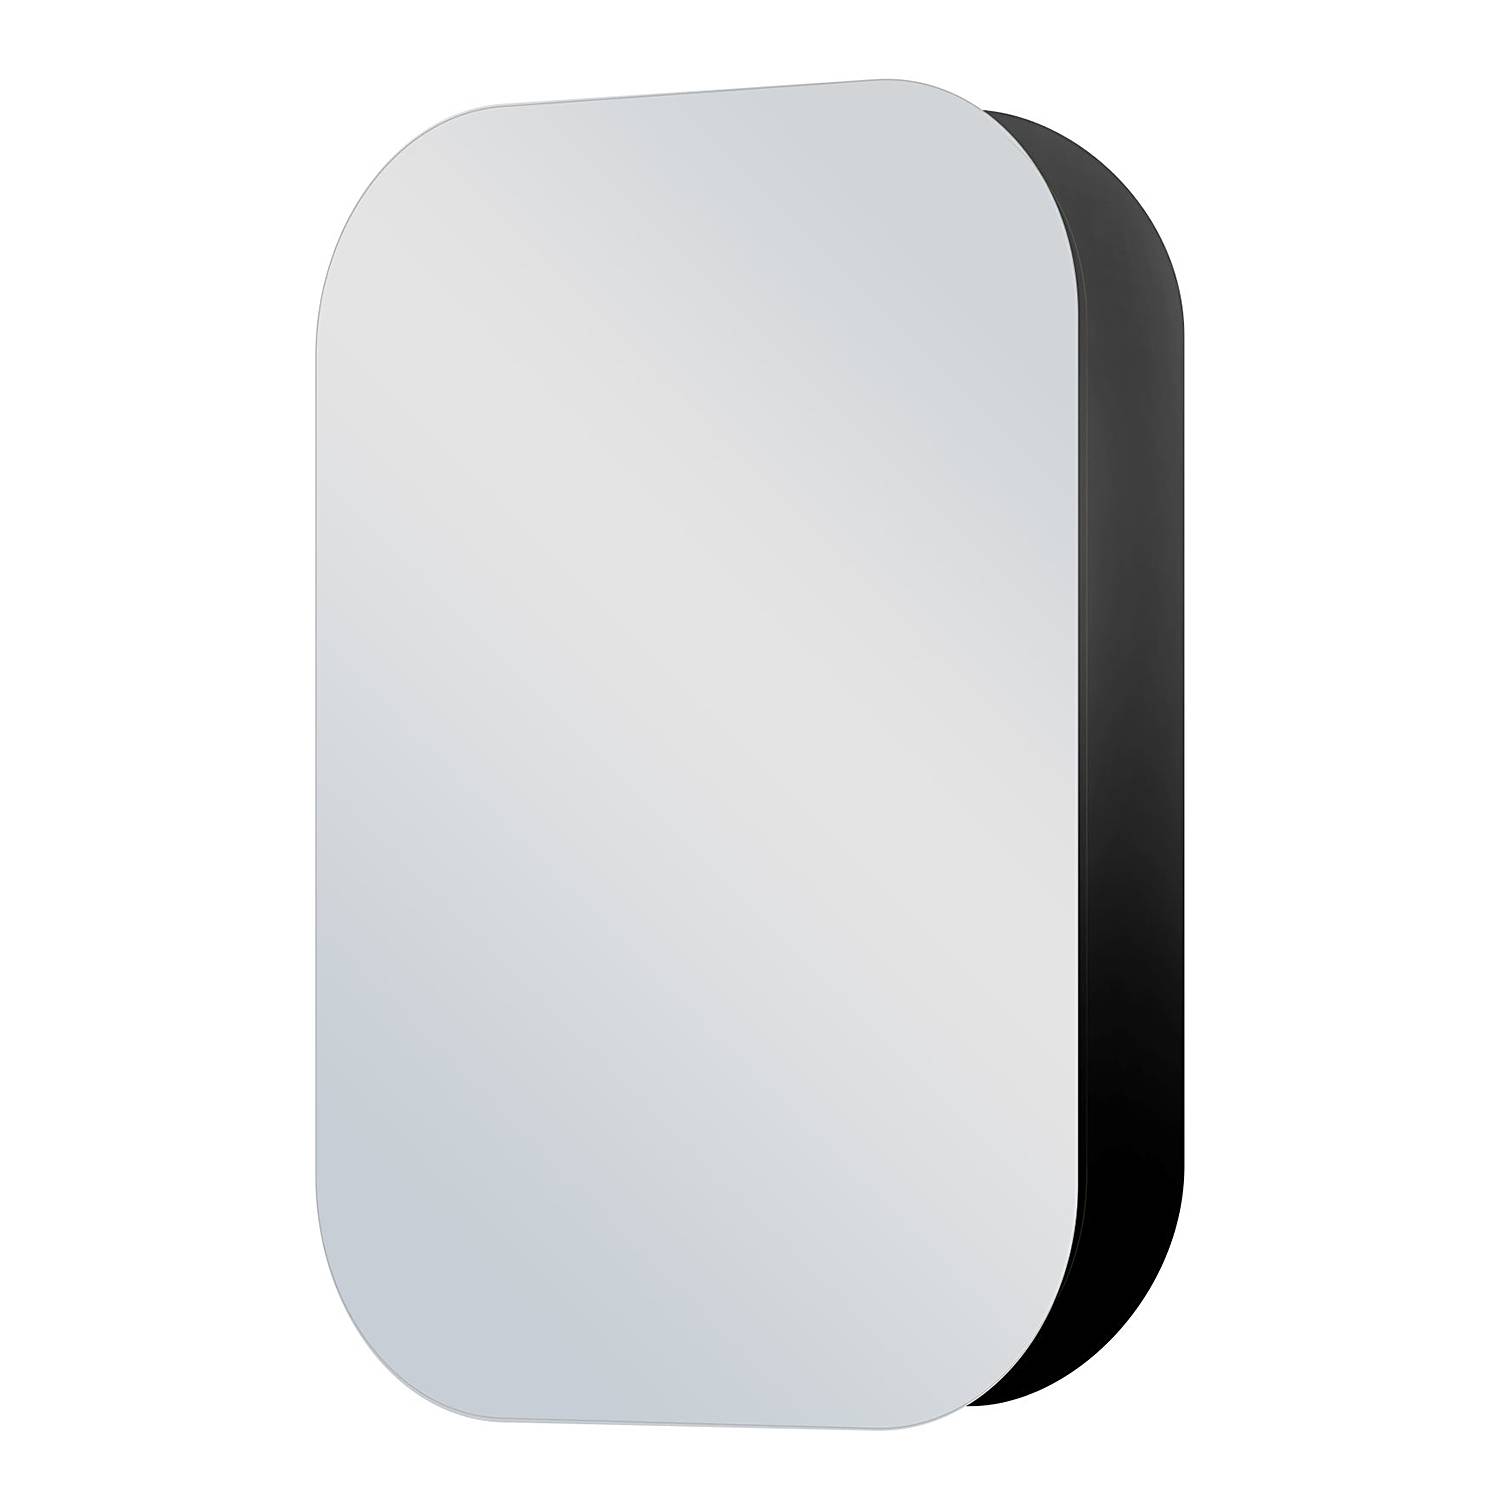 Spiegelschrank Talos Oval kaufen | home24 | Spiegelschränke